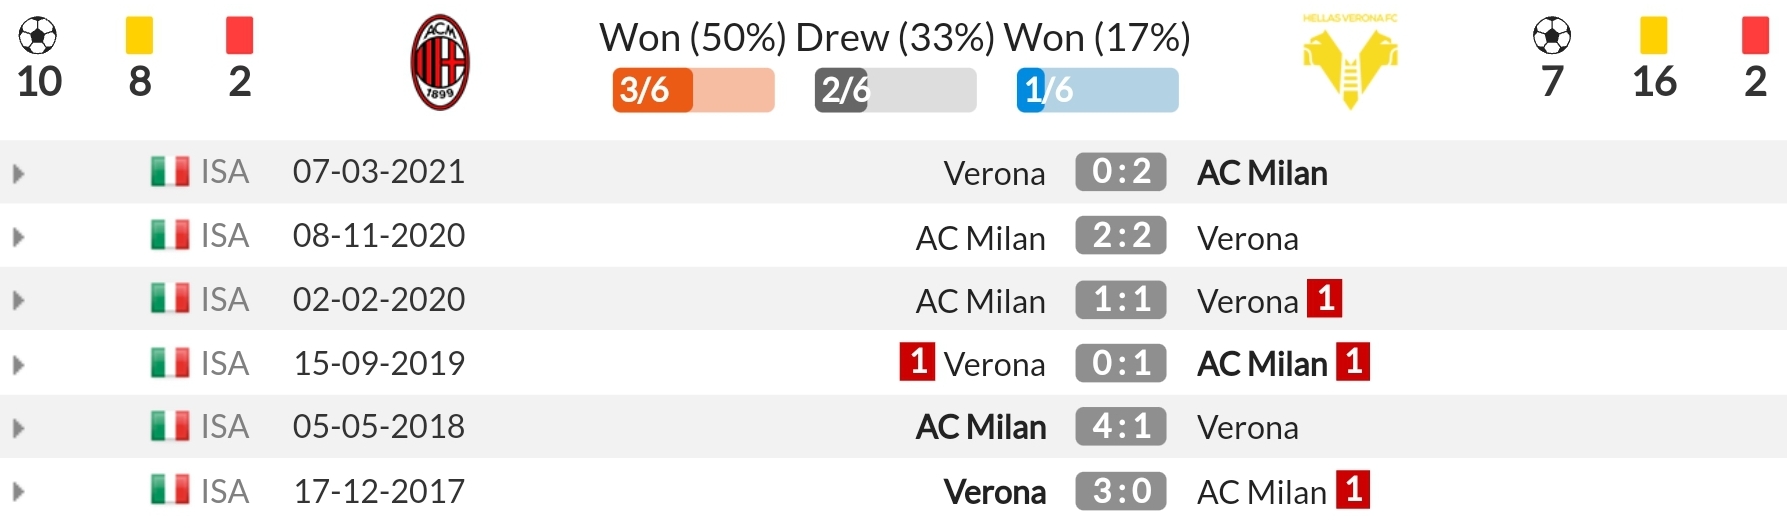 Nhận định AC Milan vs Verona (1h45, 17/10) vòng 8 Serie A: Tiếp diễn phong độ 4